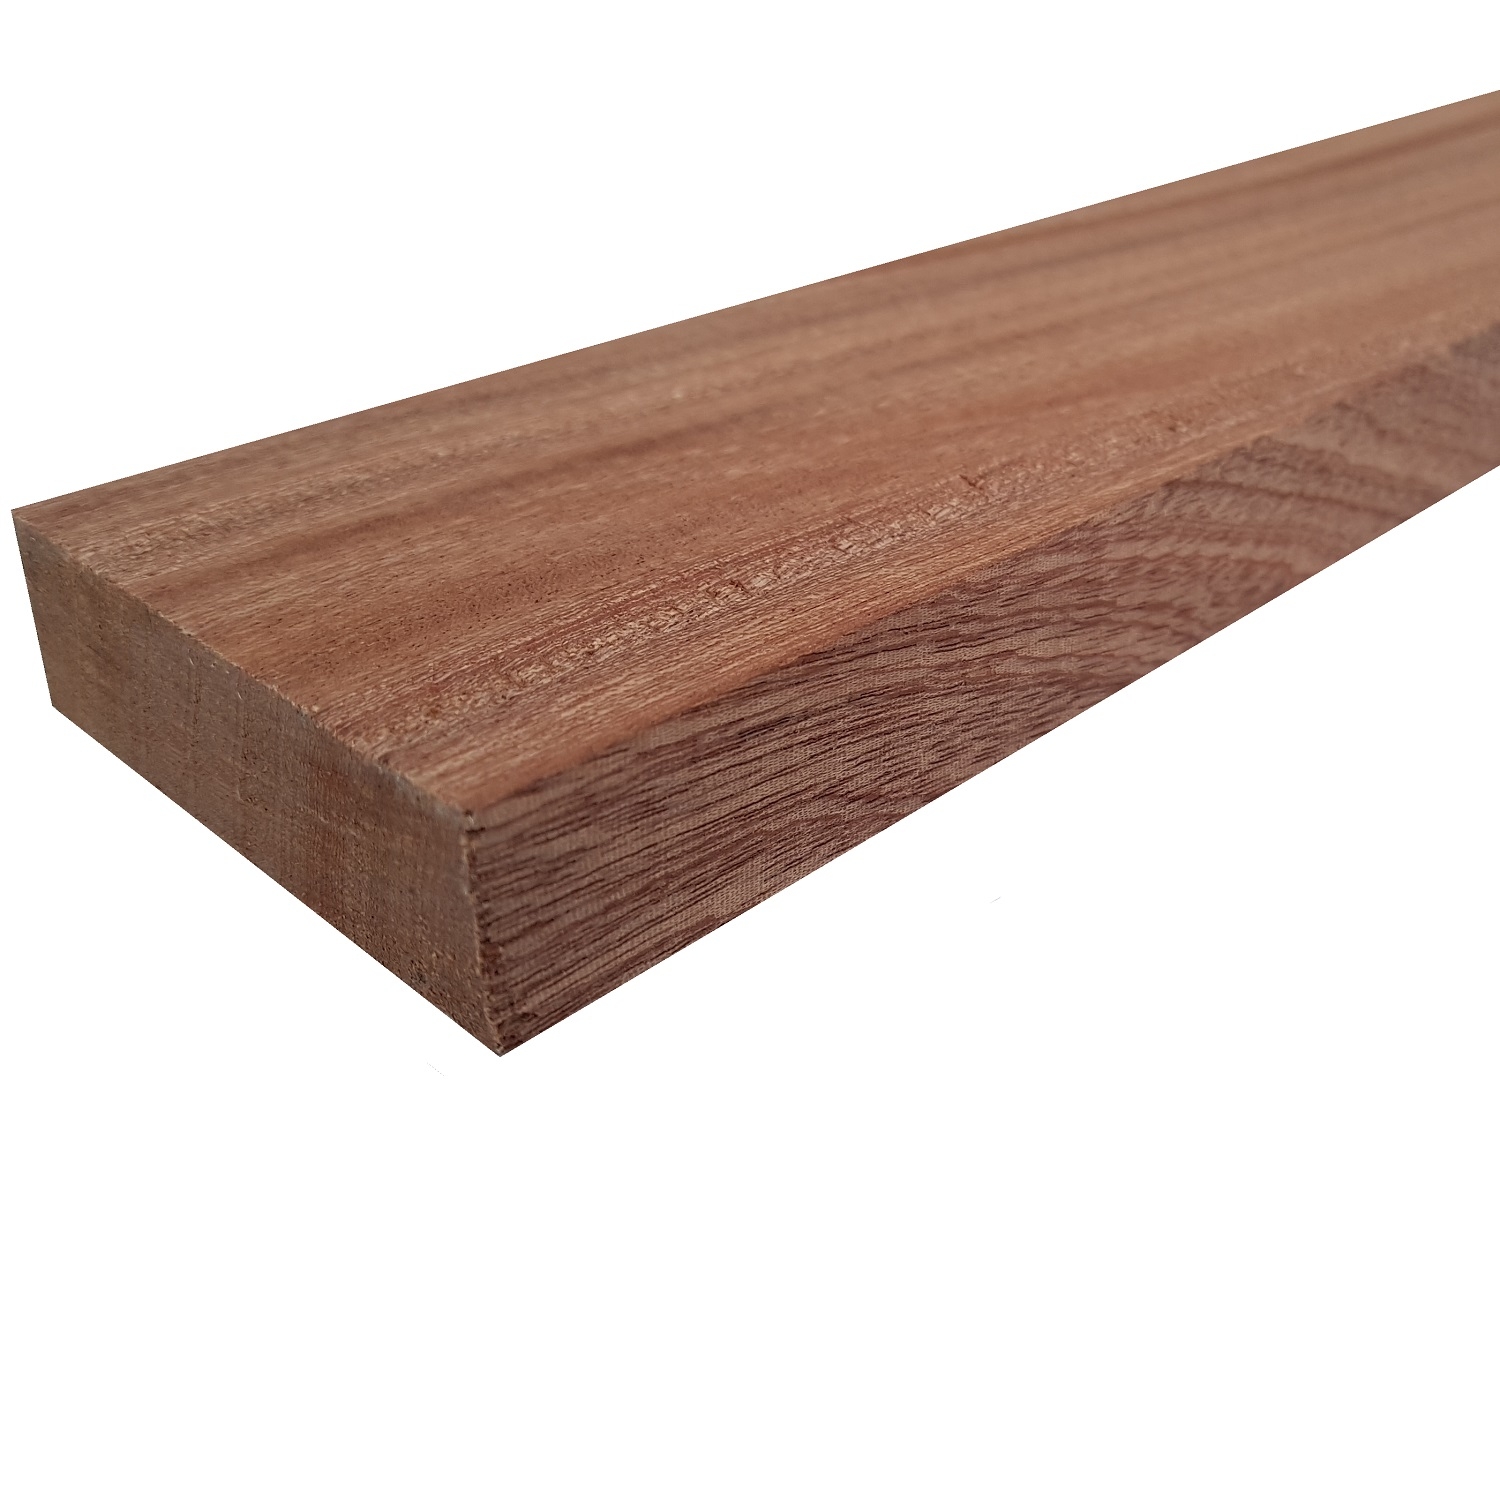 Tavola legno di Mogano Refilato Piallato mm 32 x 150 x 2400